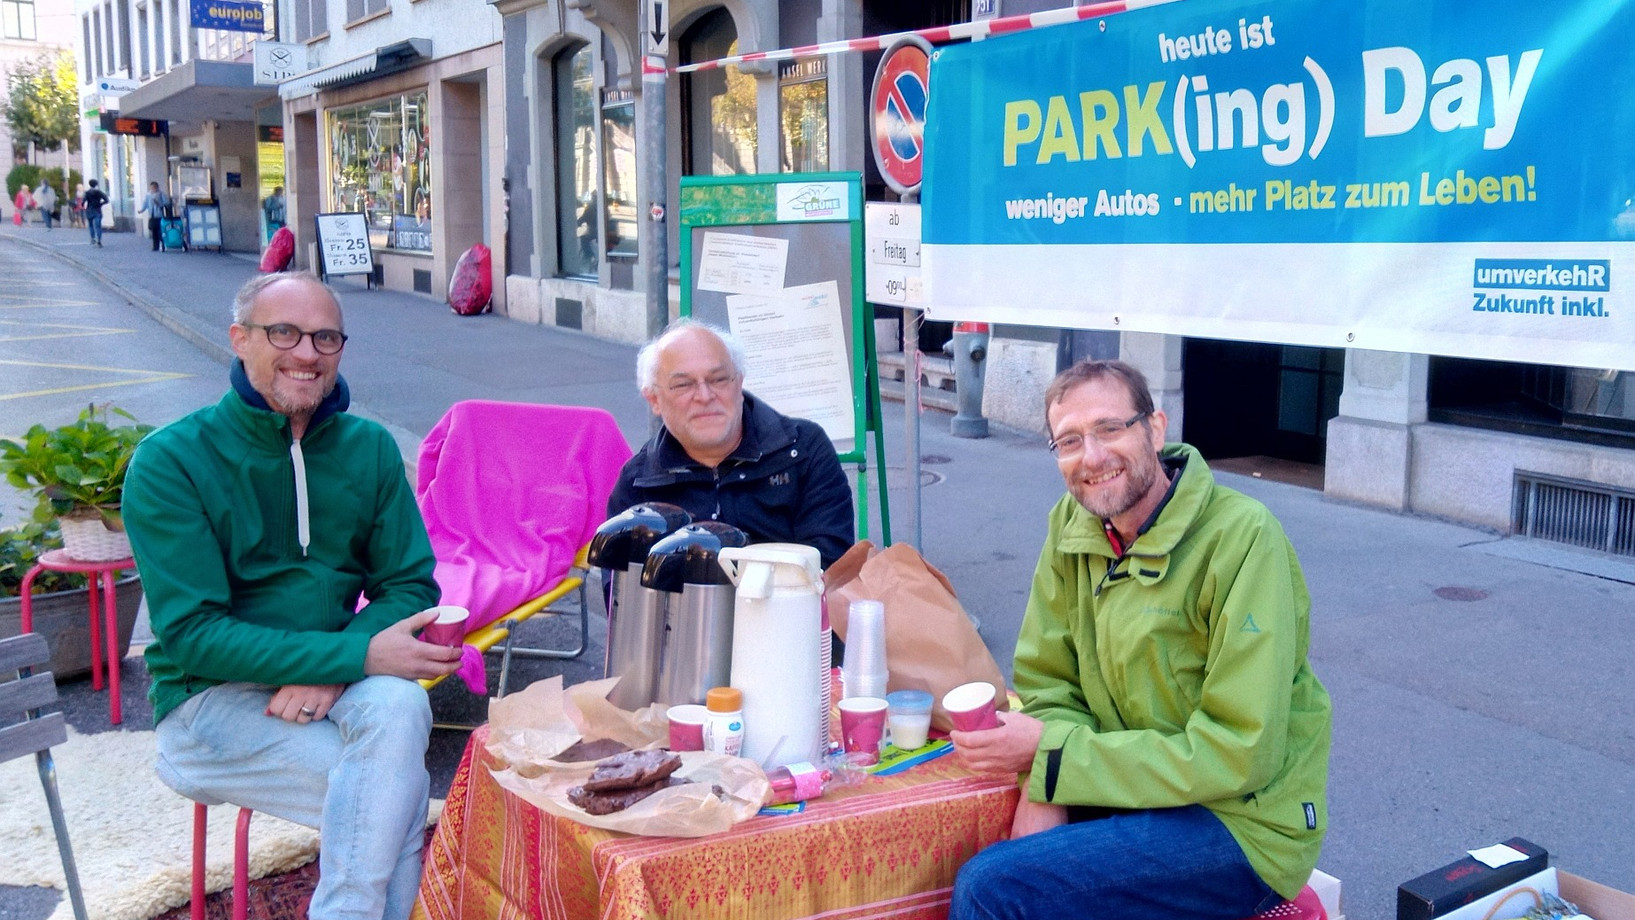 Brot und Spiele statt Parkplatz von Reto und Freunden in Winterthur am PARK(ing) Day 2019